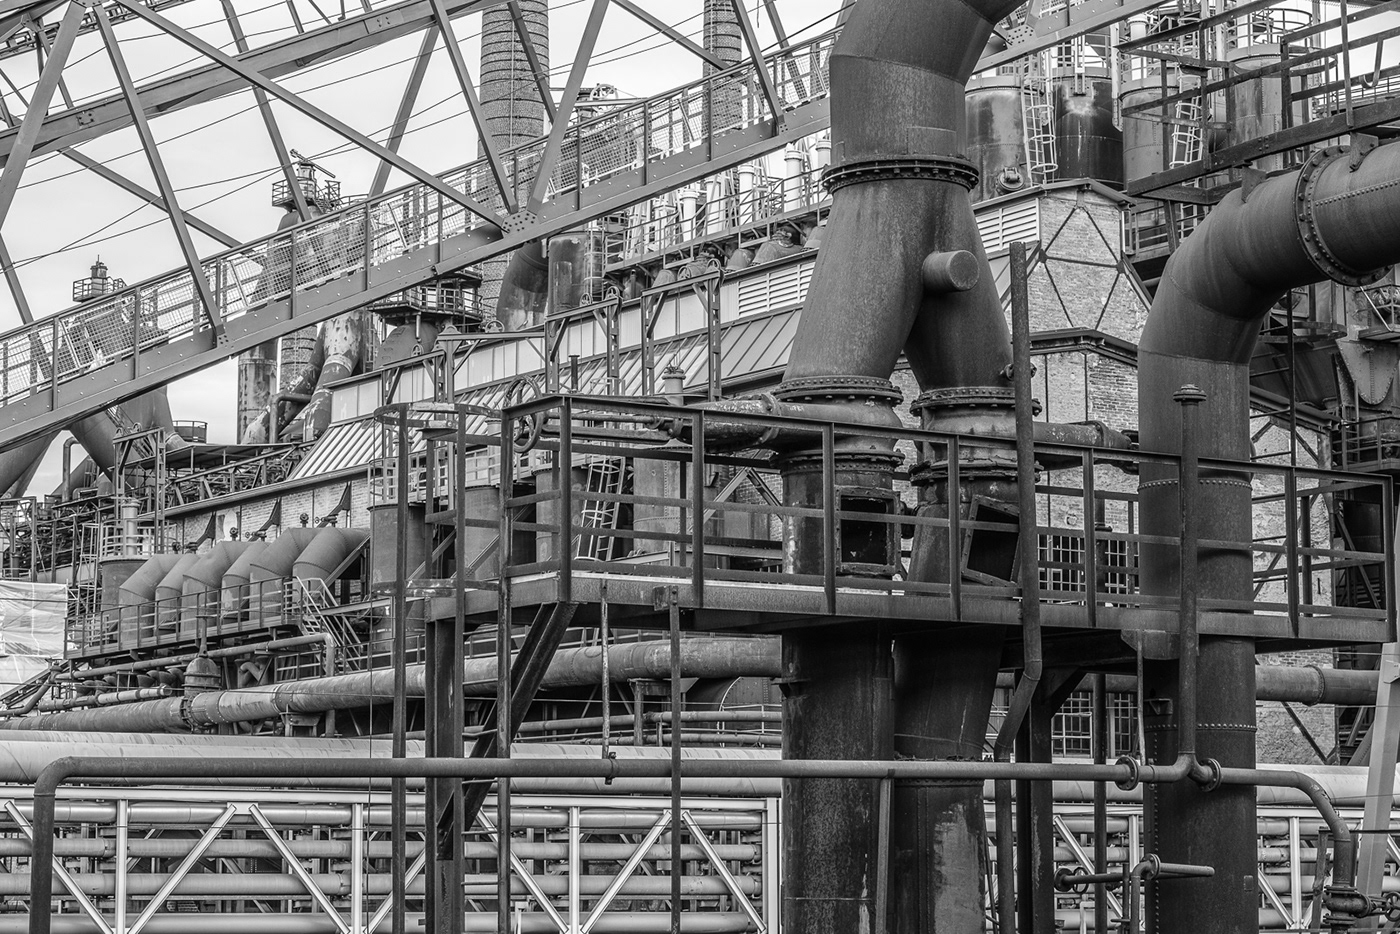 Eisenwerk industriedenkmal Industriefotografie Ironworks Saarland stahlhütte UNESCO weltkulturerbe Black&white schwarz-weiß